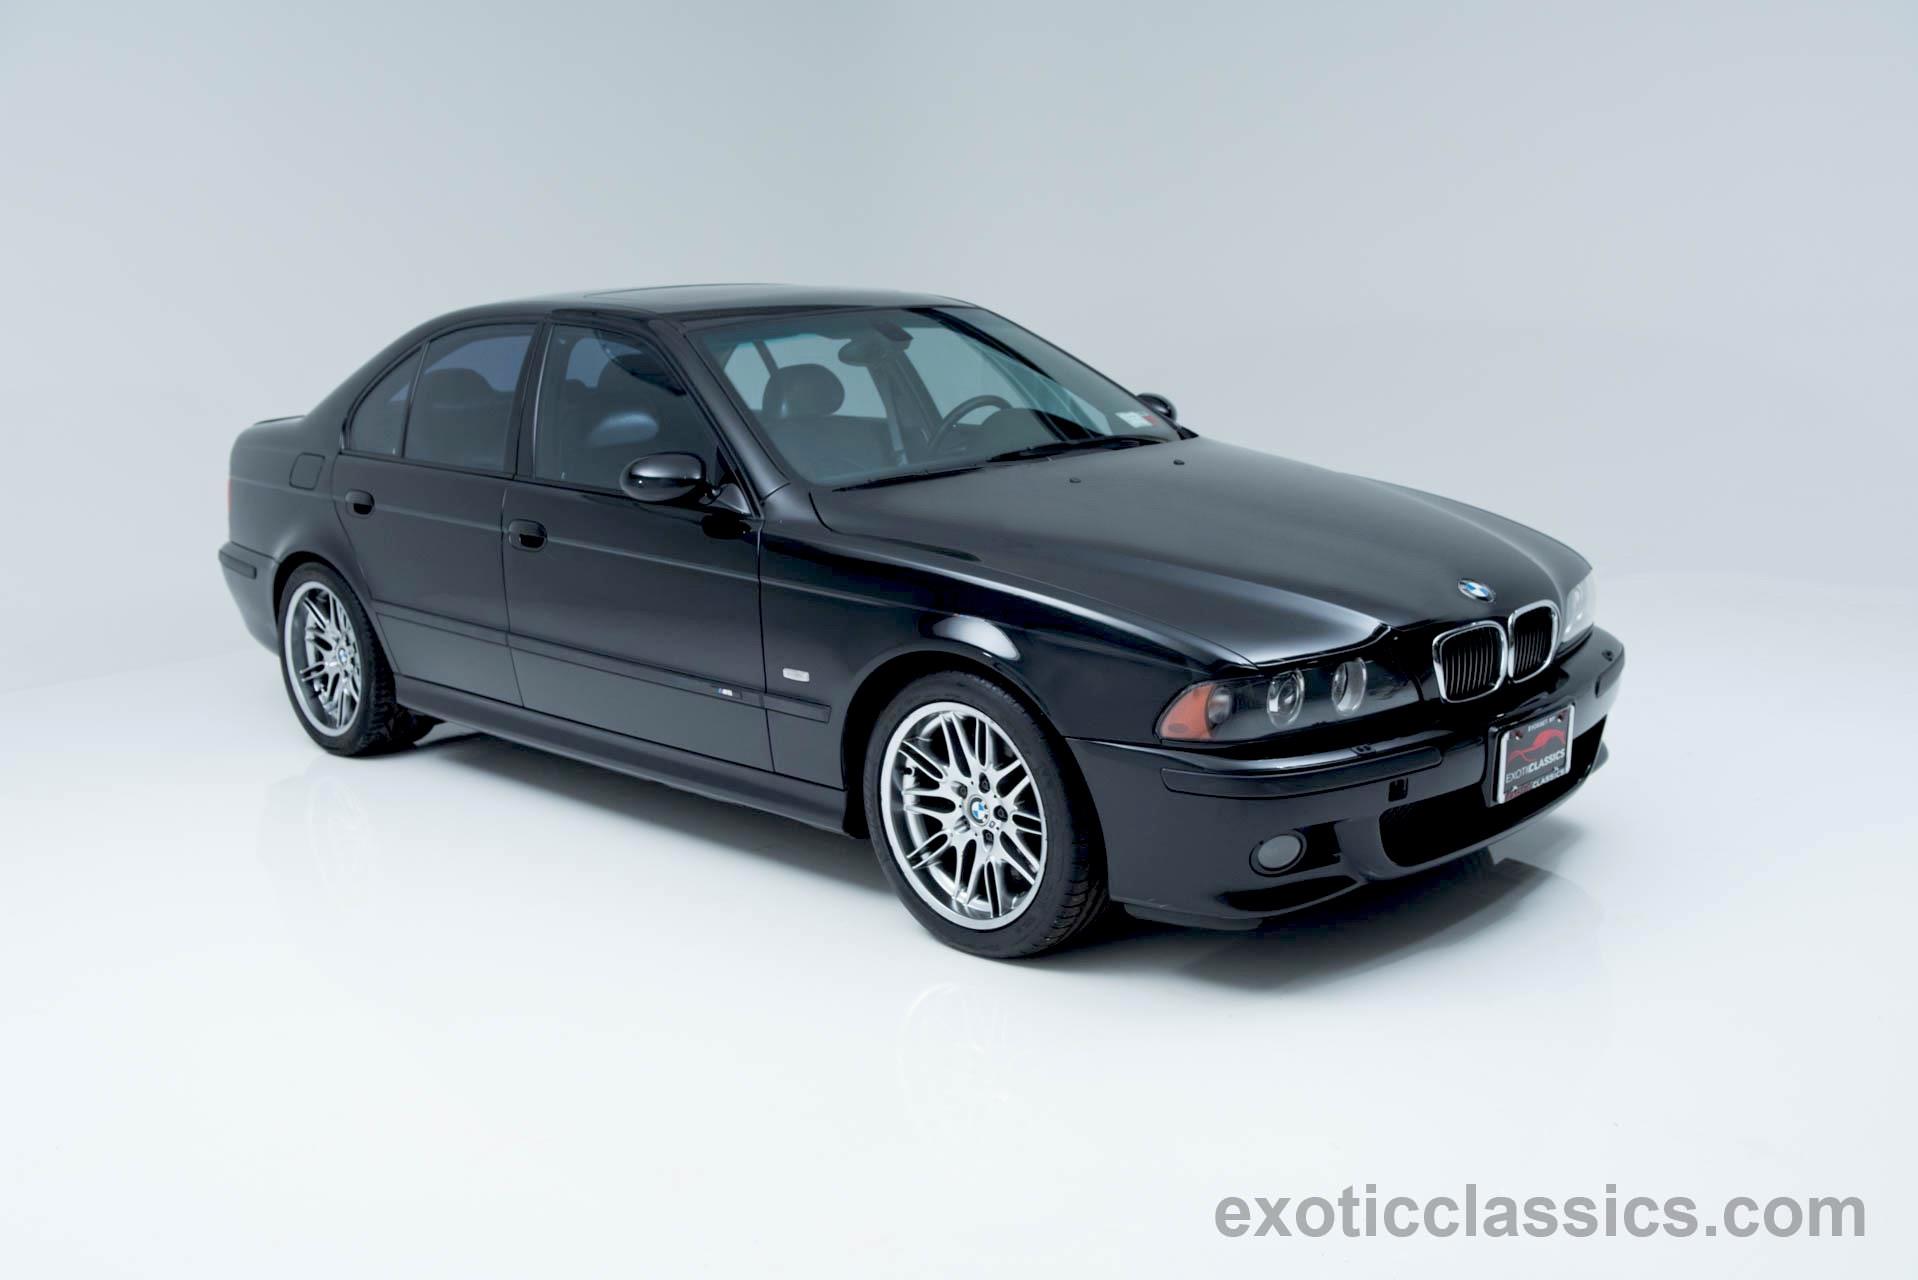 2001 BMW M5 